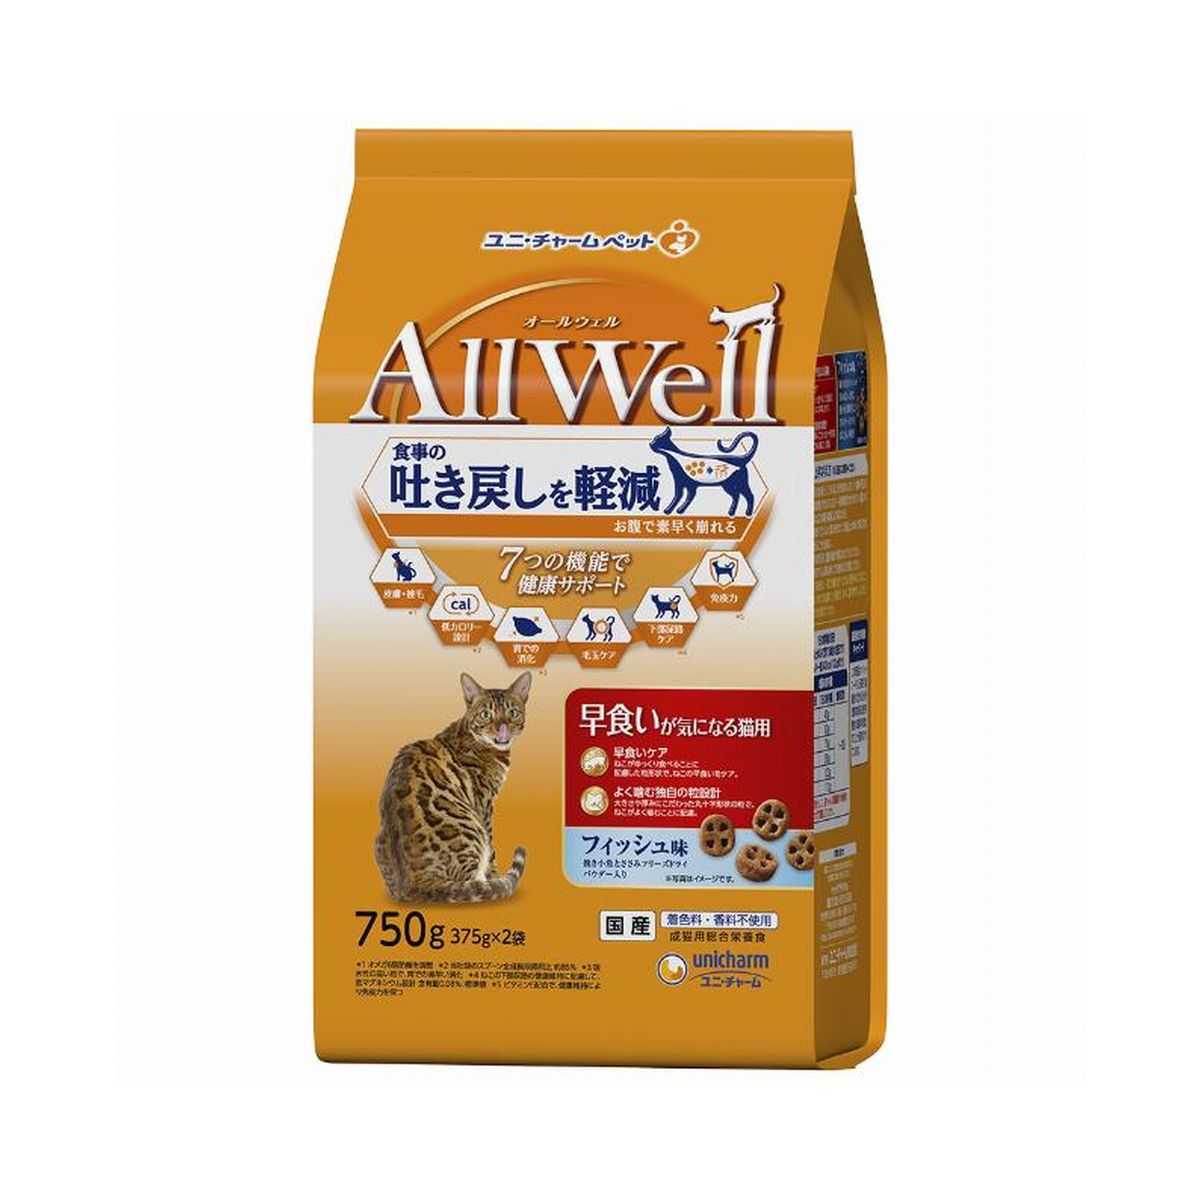 AllWell早食イガ気ニナル猫用フィッシュ味挽キ小魚トササミフリーズドライパウダー入リ 750g×9